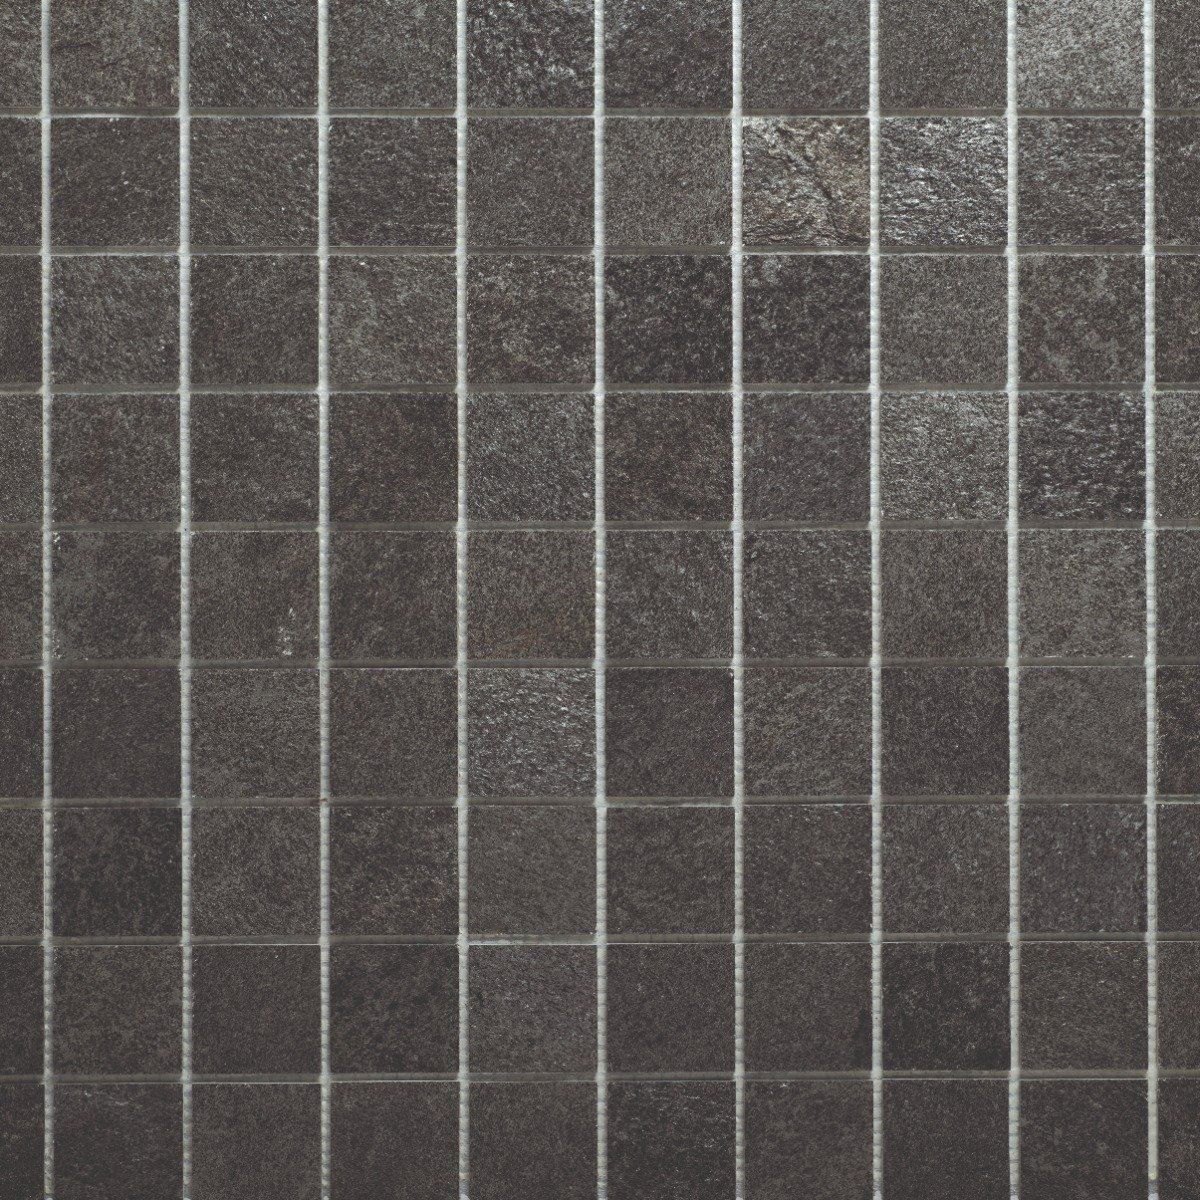 Slicedstone Sea Stone Mosaic Bathroom Tile (50x50mm squares) 1000 x 500mm